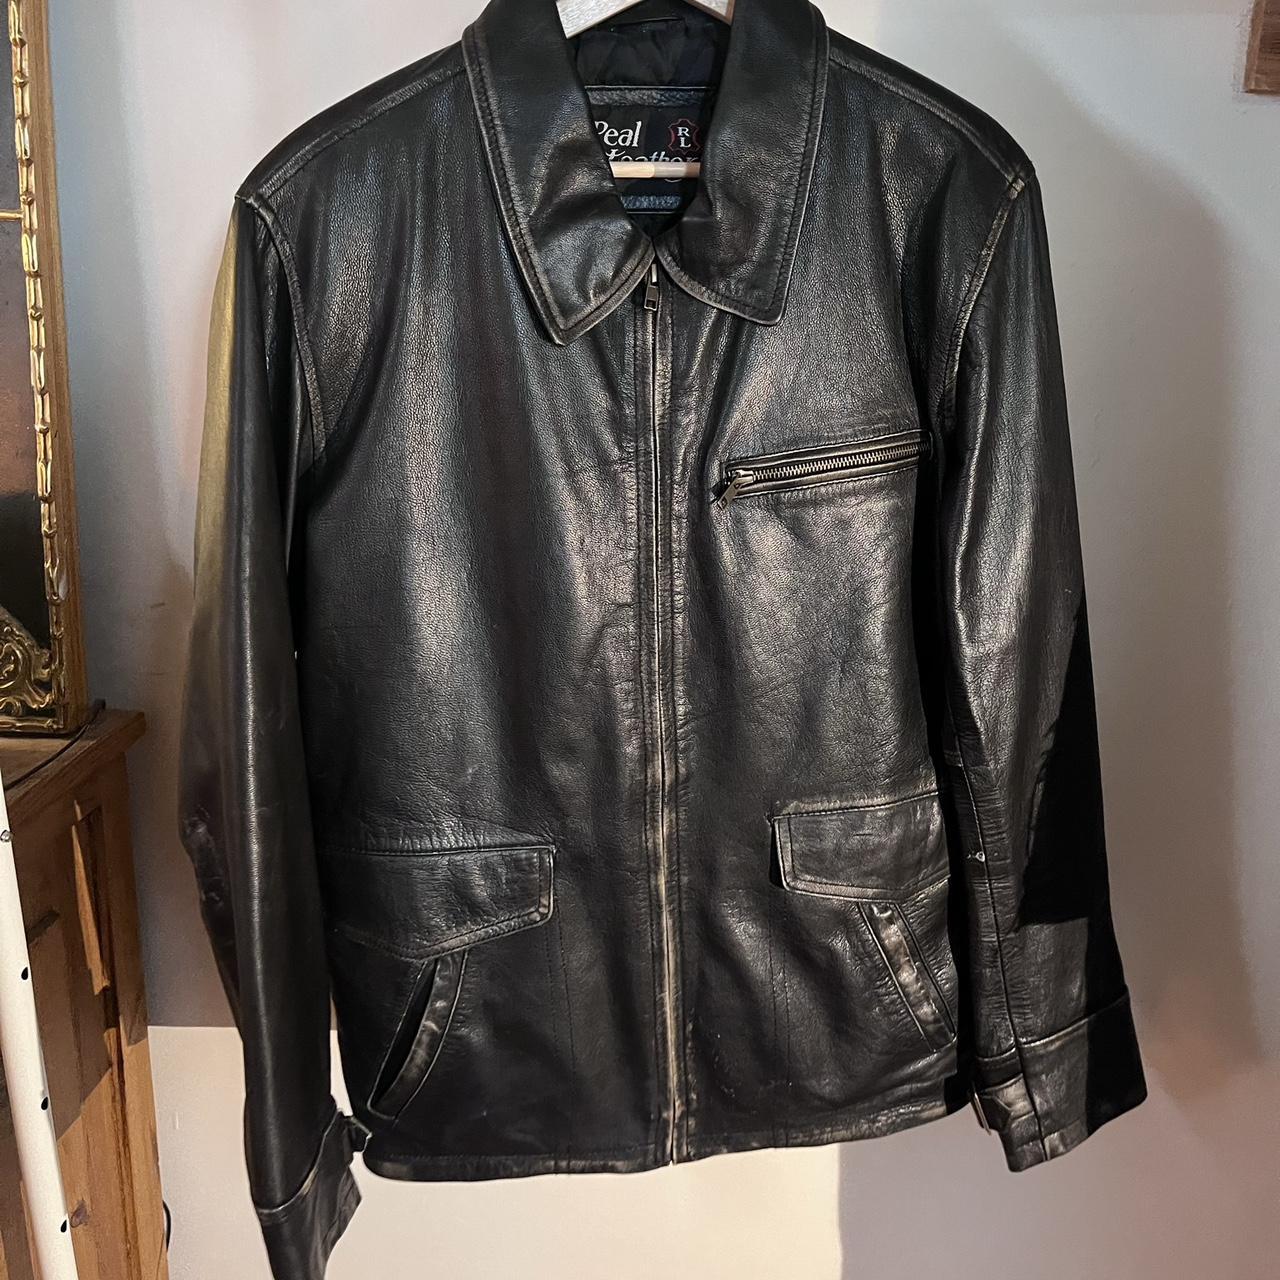 Real Leather Genuine Biker Jacket Black Vintage... - Depop